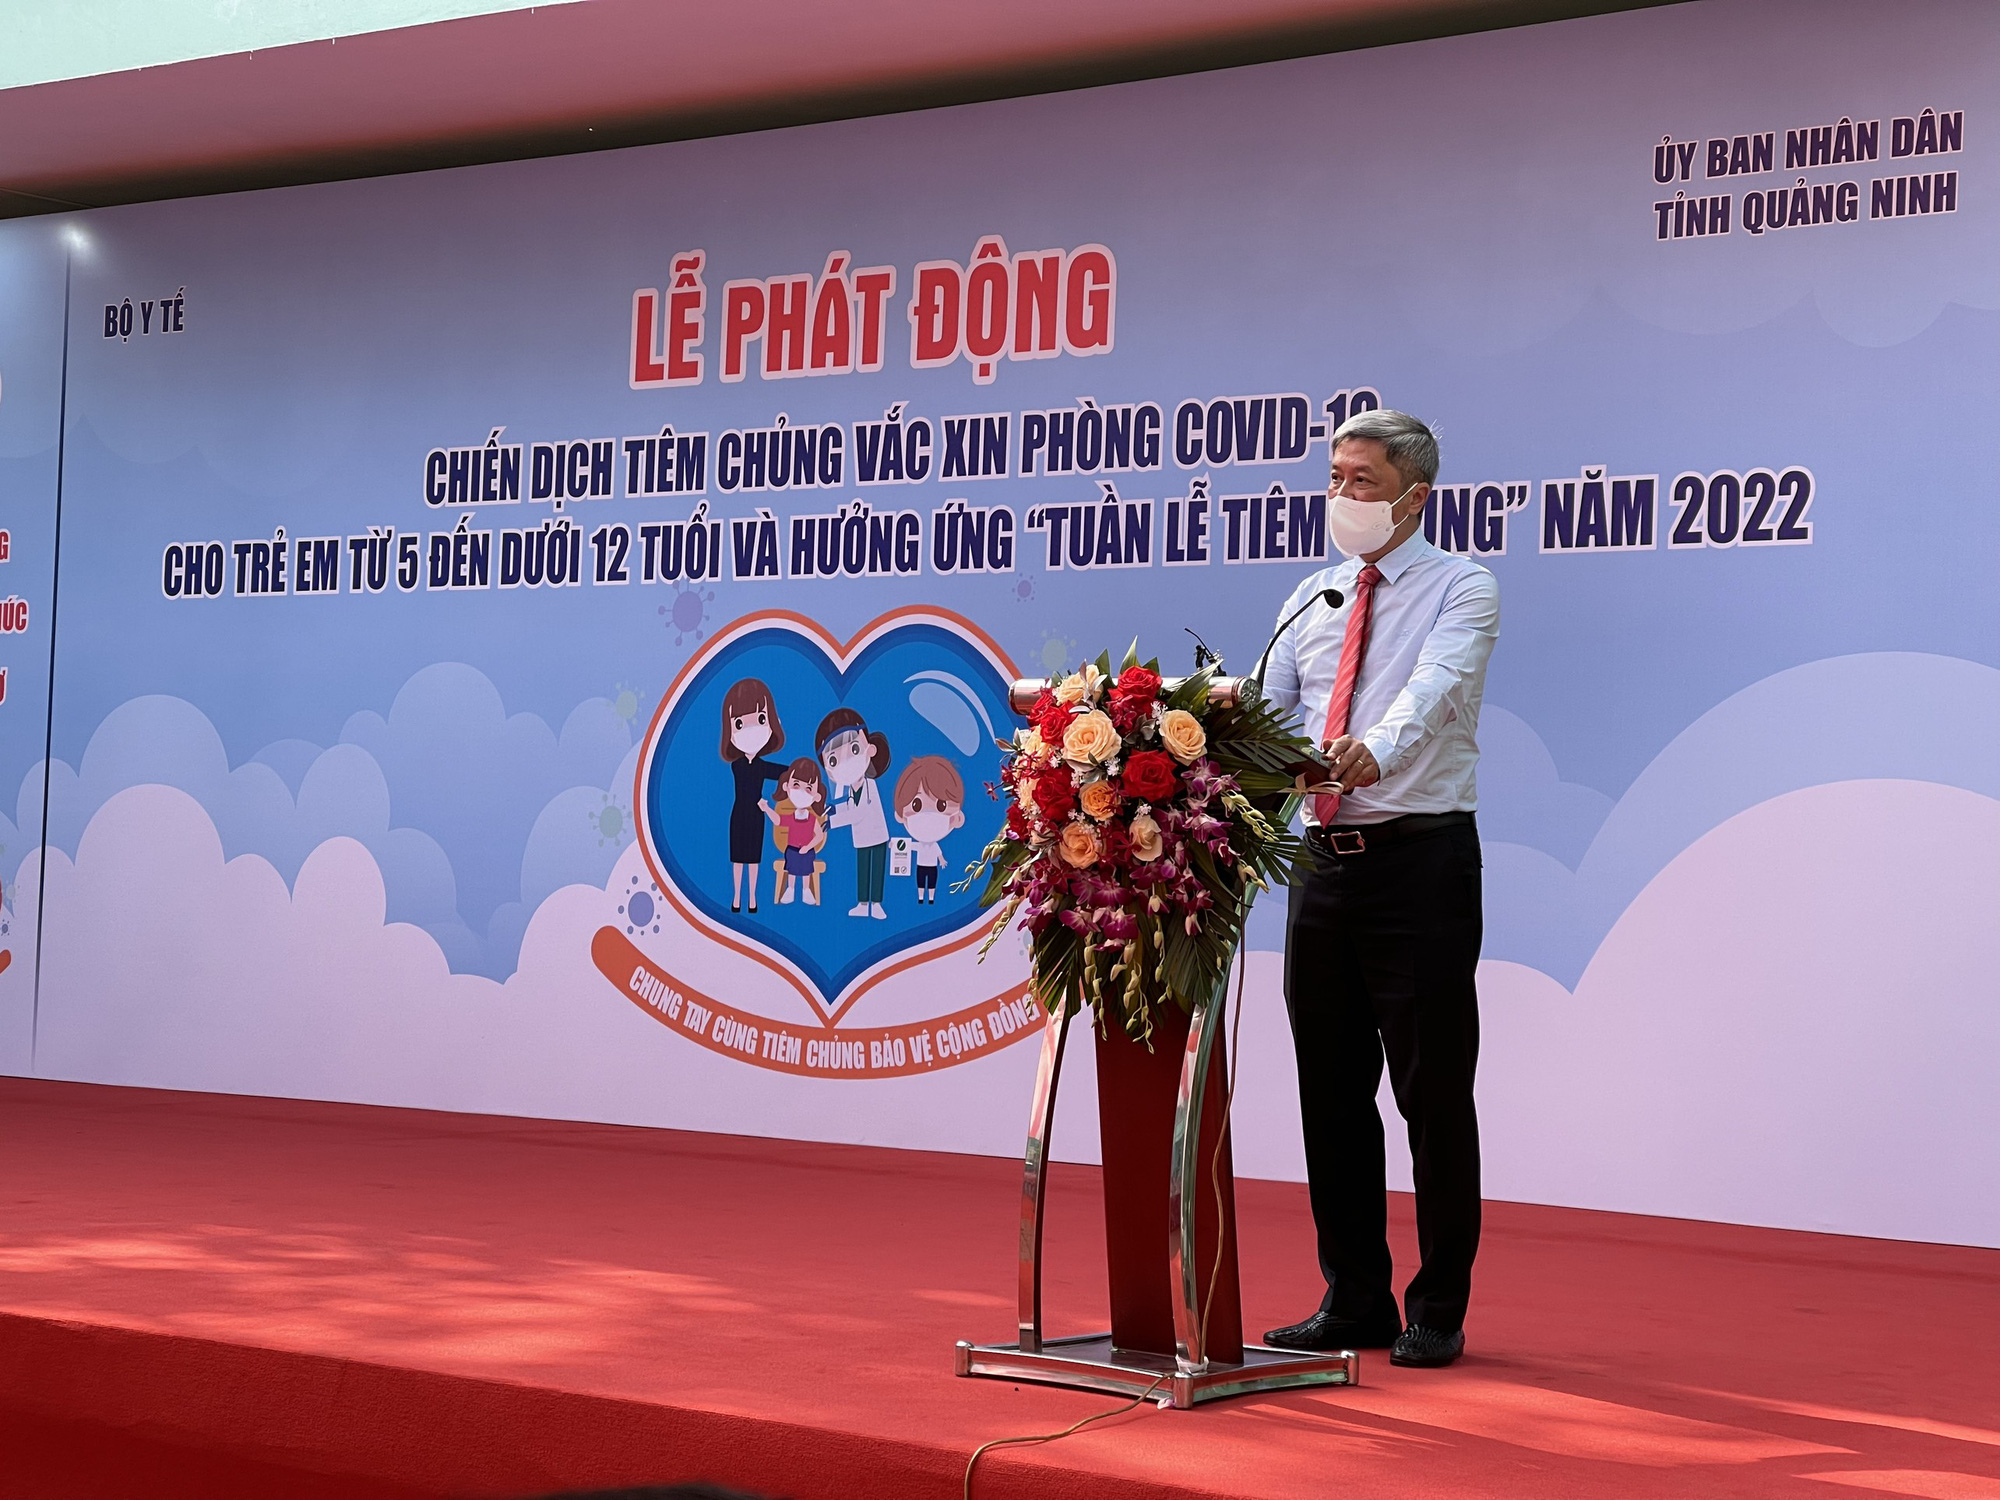 Gần 200 trẻ từ 5 - dưới 12 tuổi đầu tiên ở Quảng Ninh tiêm vaccine phòng COVID-19 - Ảnh 1.